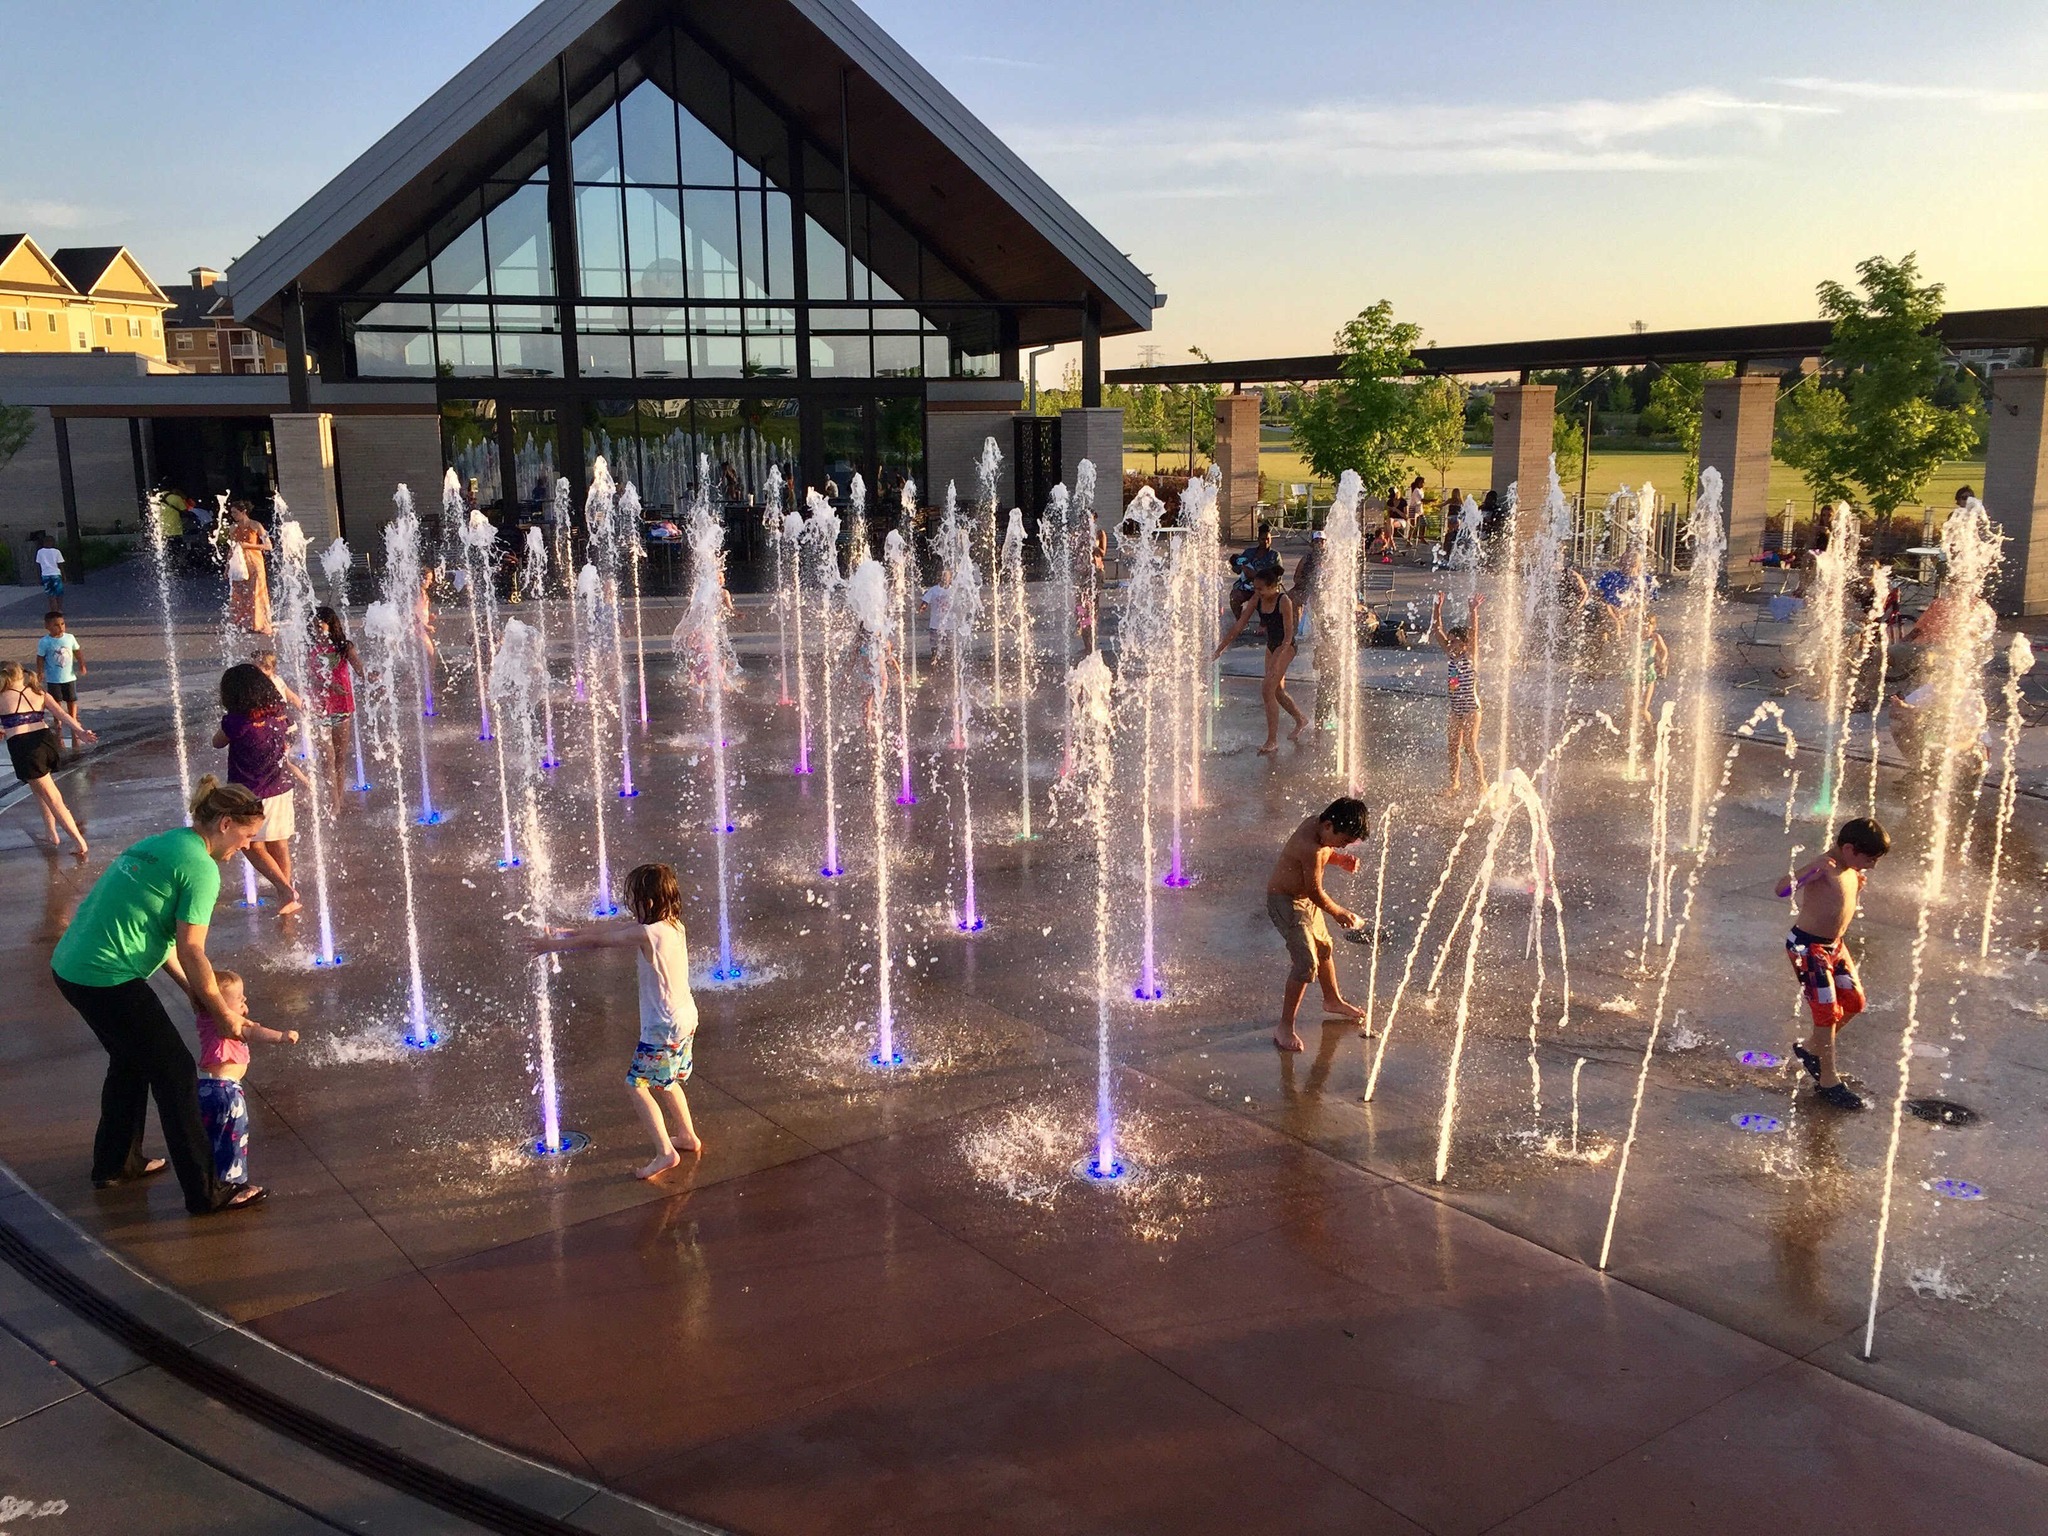 aquatic center fountains